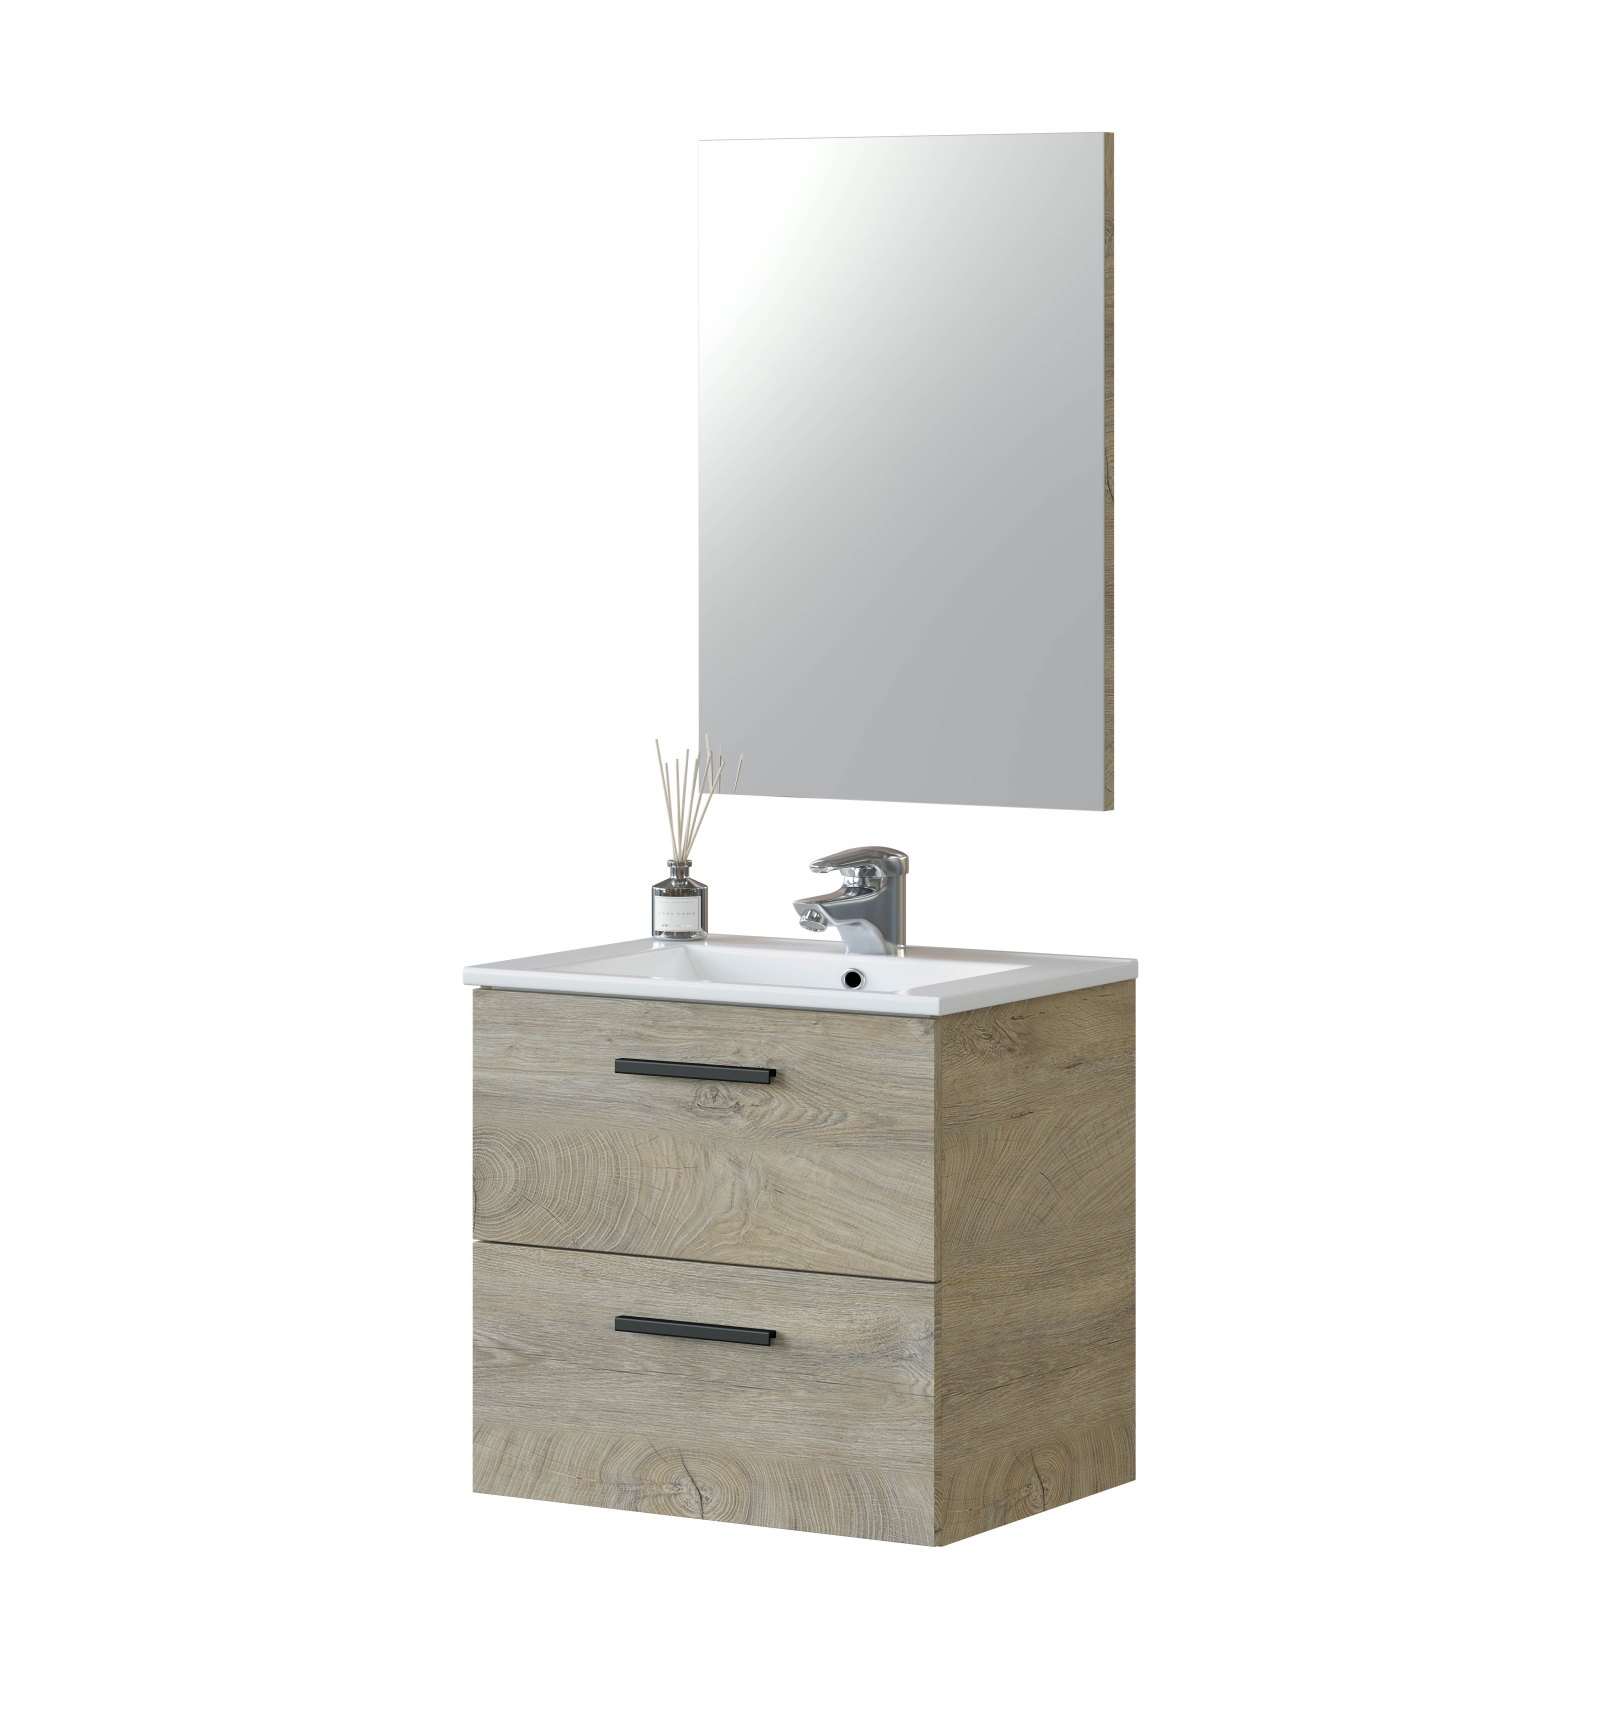 Mueble de baño para colgar con dos cajones y espejo